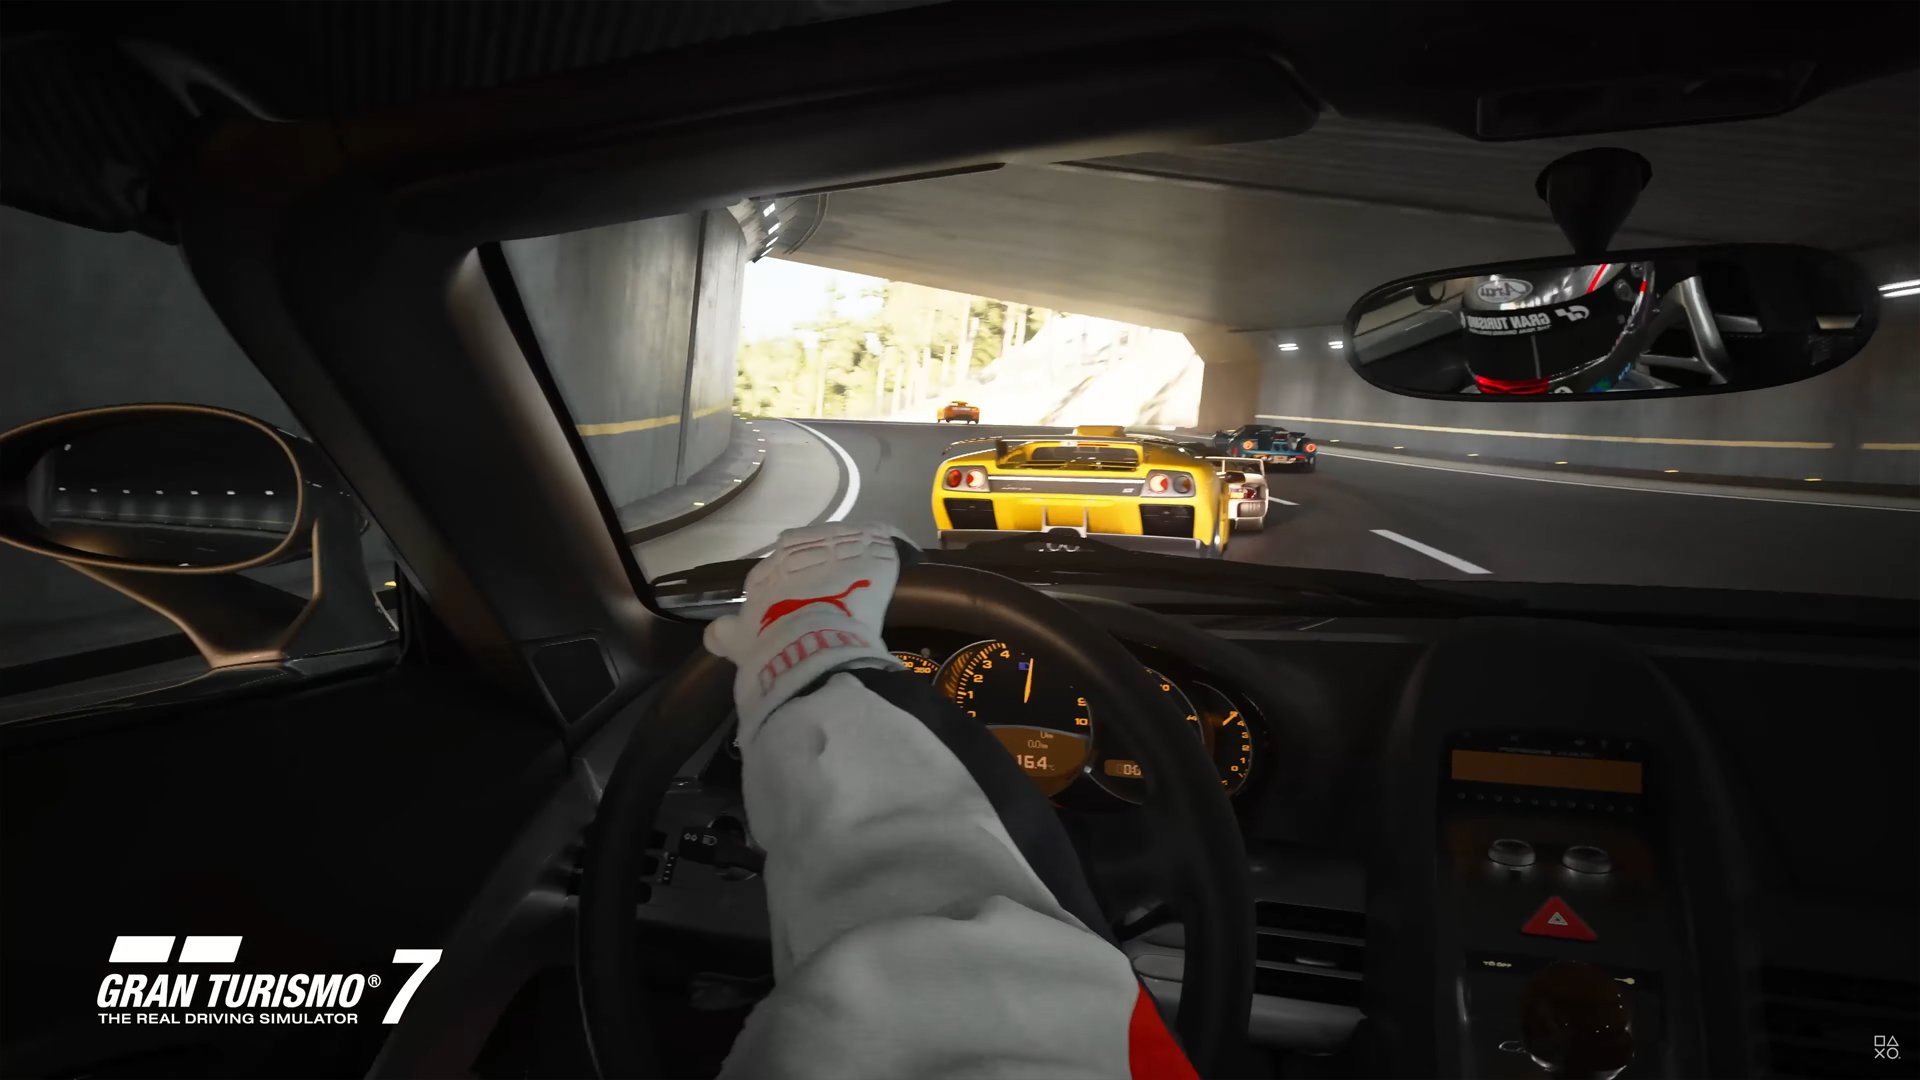 Gran Turismo 7 Appare Nel Nuovo Video Promozionale Di Playstation 5